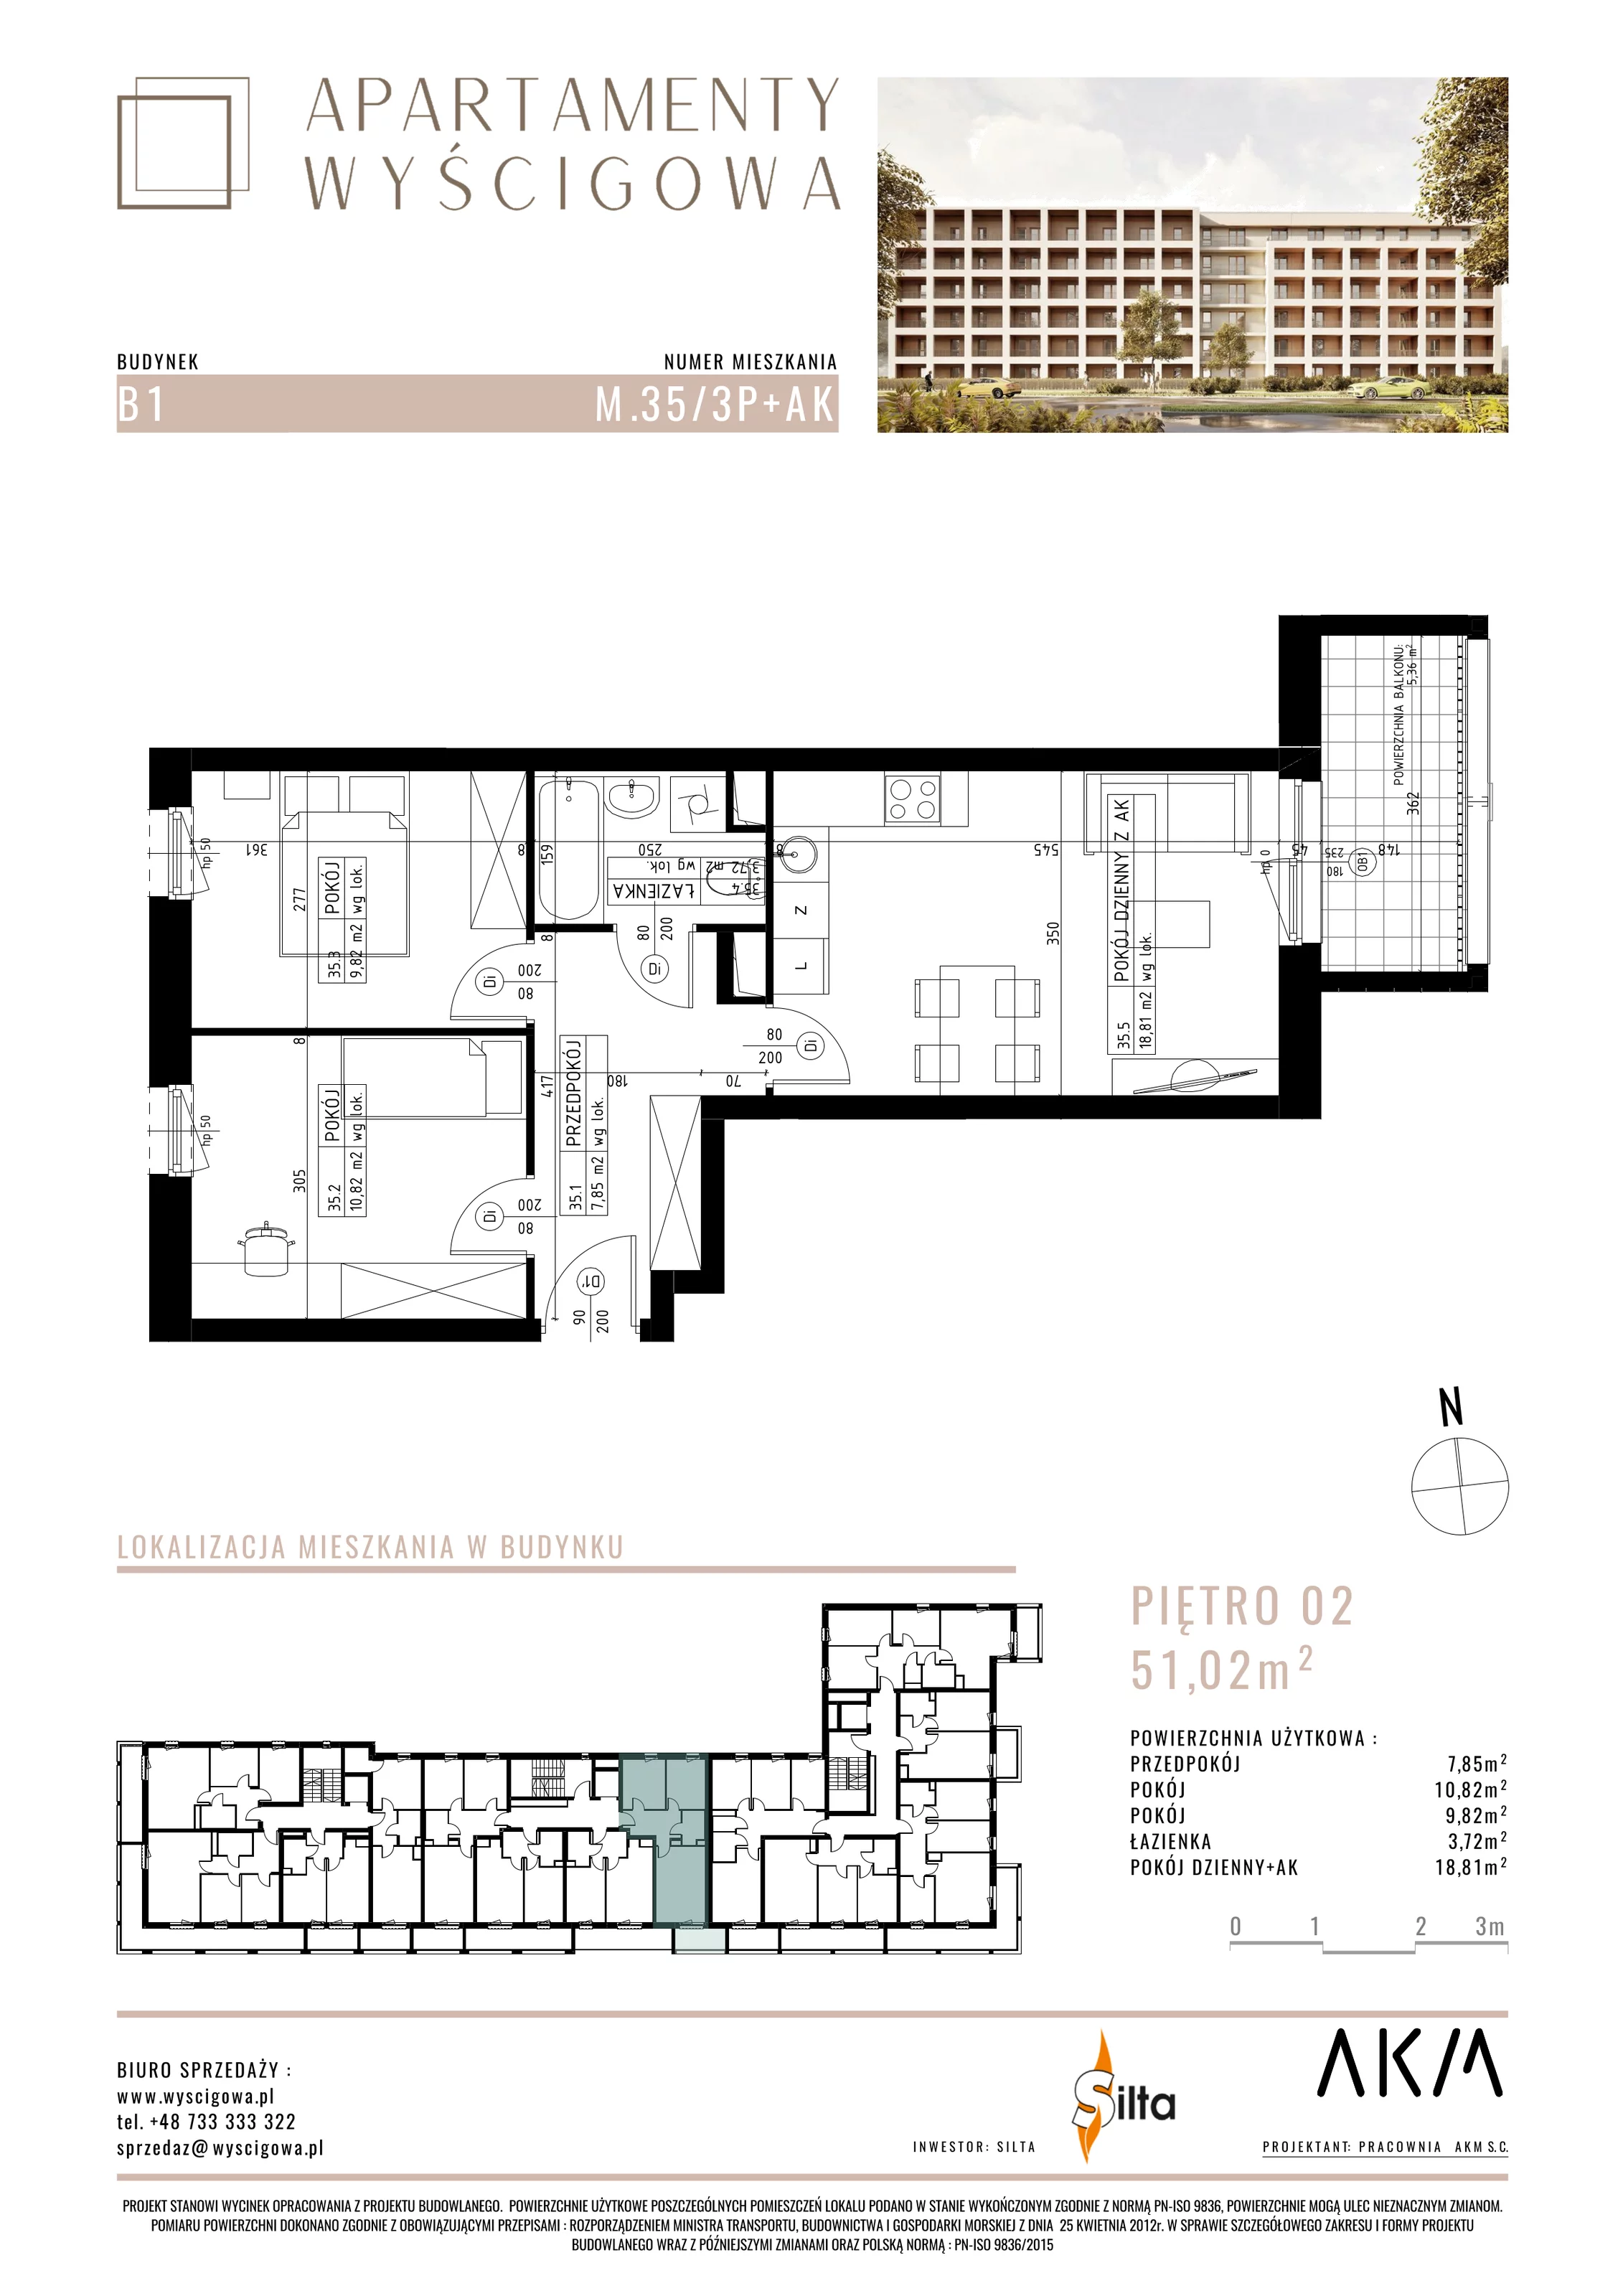 Mieszkanie 51,02 m², piętro 2, oferta nr B1.M35, Apartamenty Wyścigowa, Lublin, Dziesiąta, Dziesiąta, ul. Wyścigowa